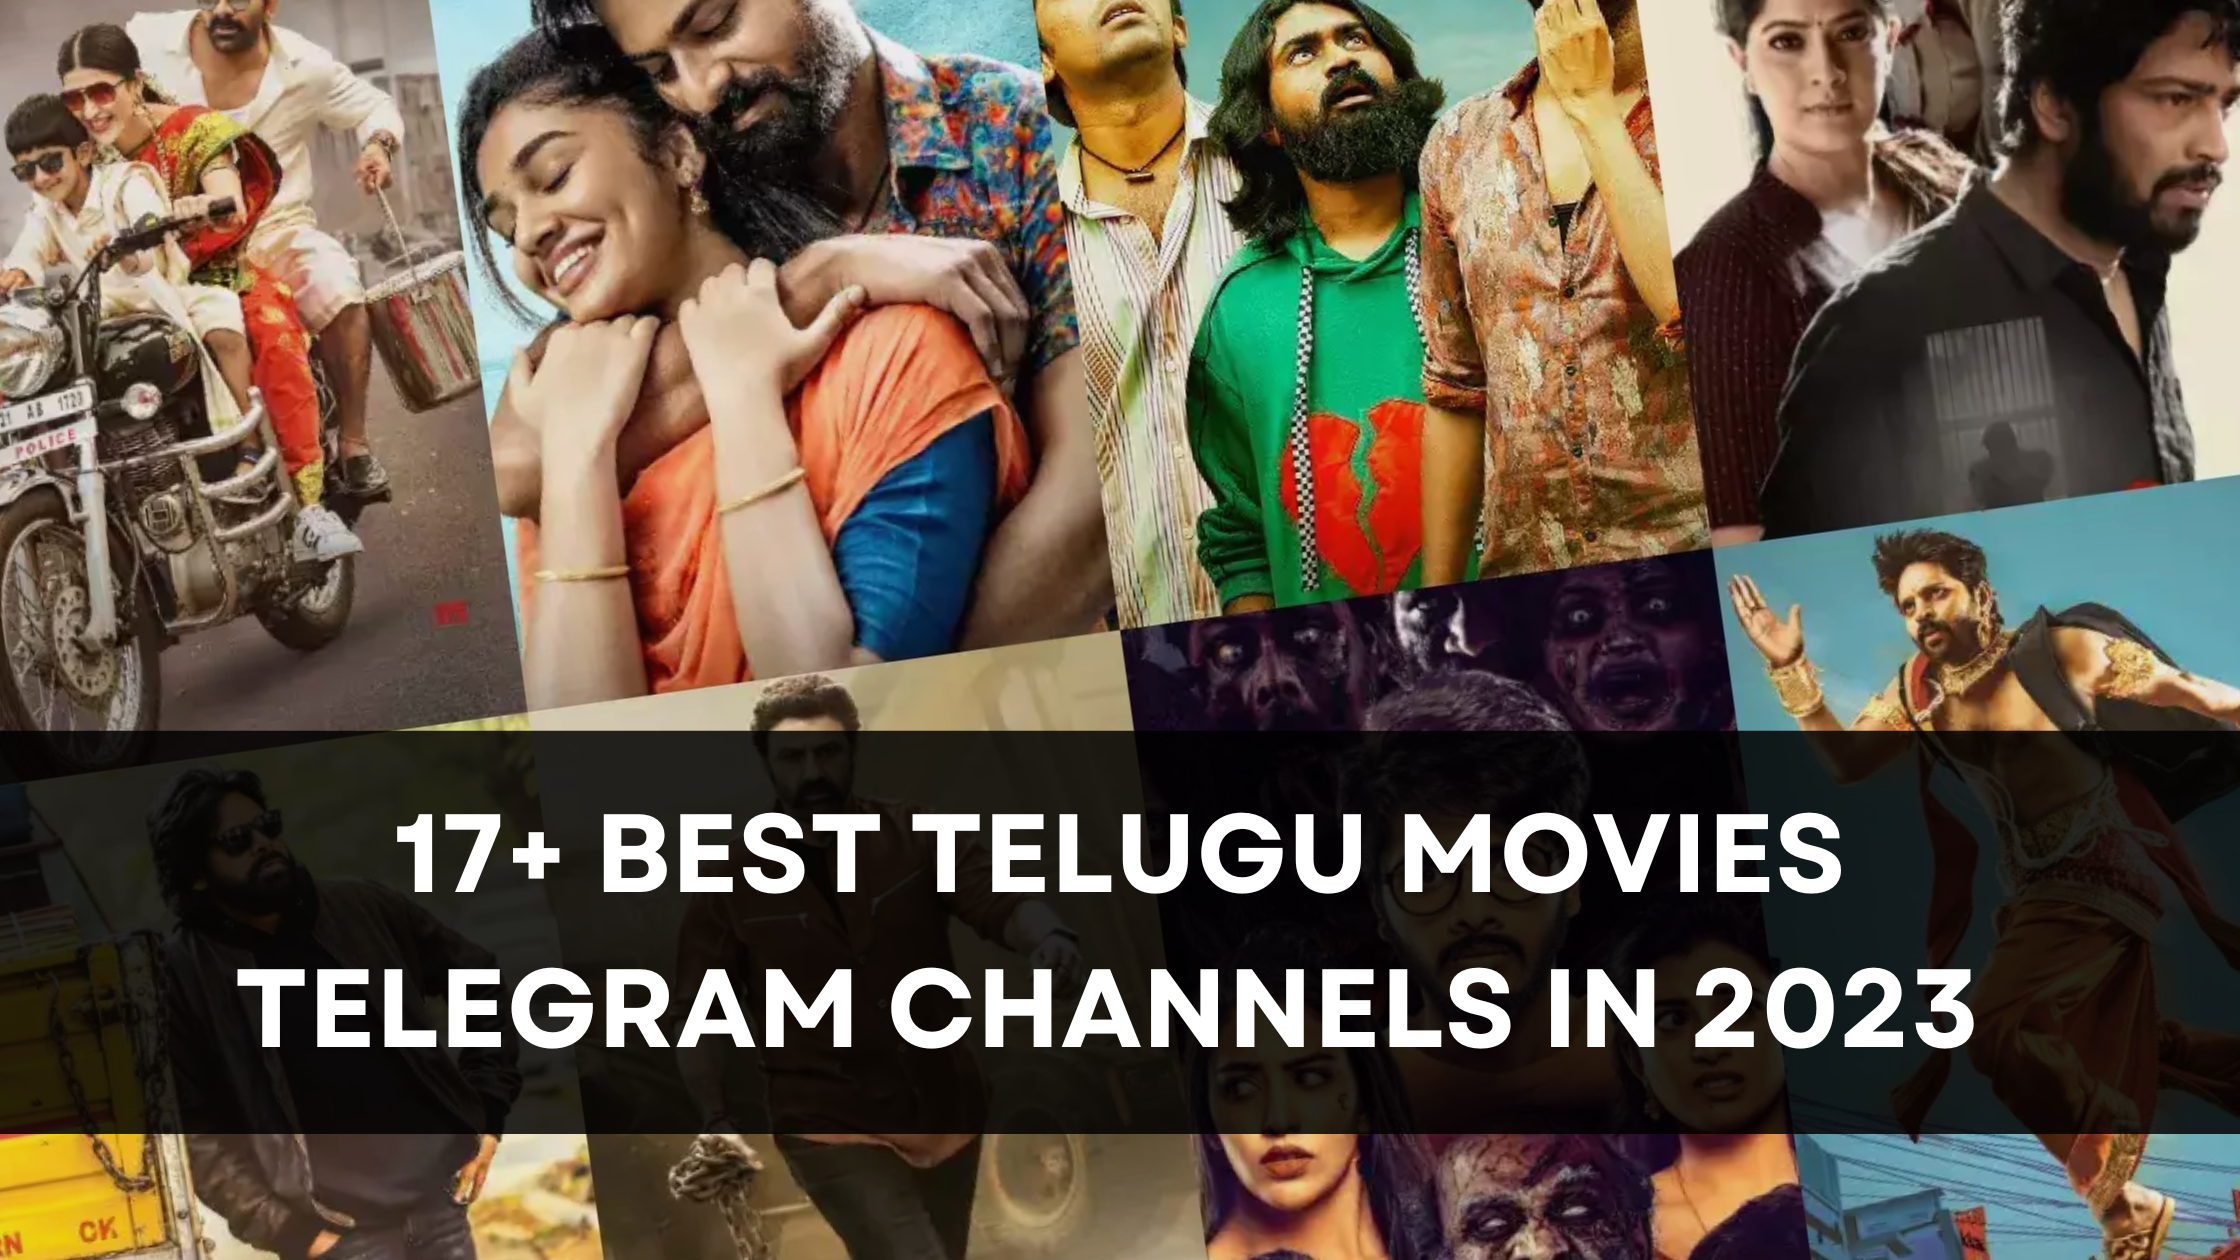 Best Telugu Movies Telegram Channels in 2023